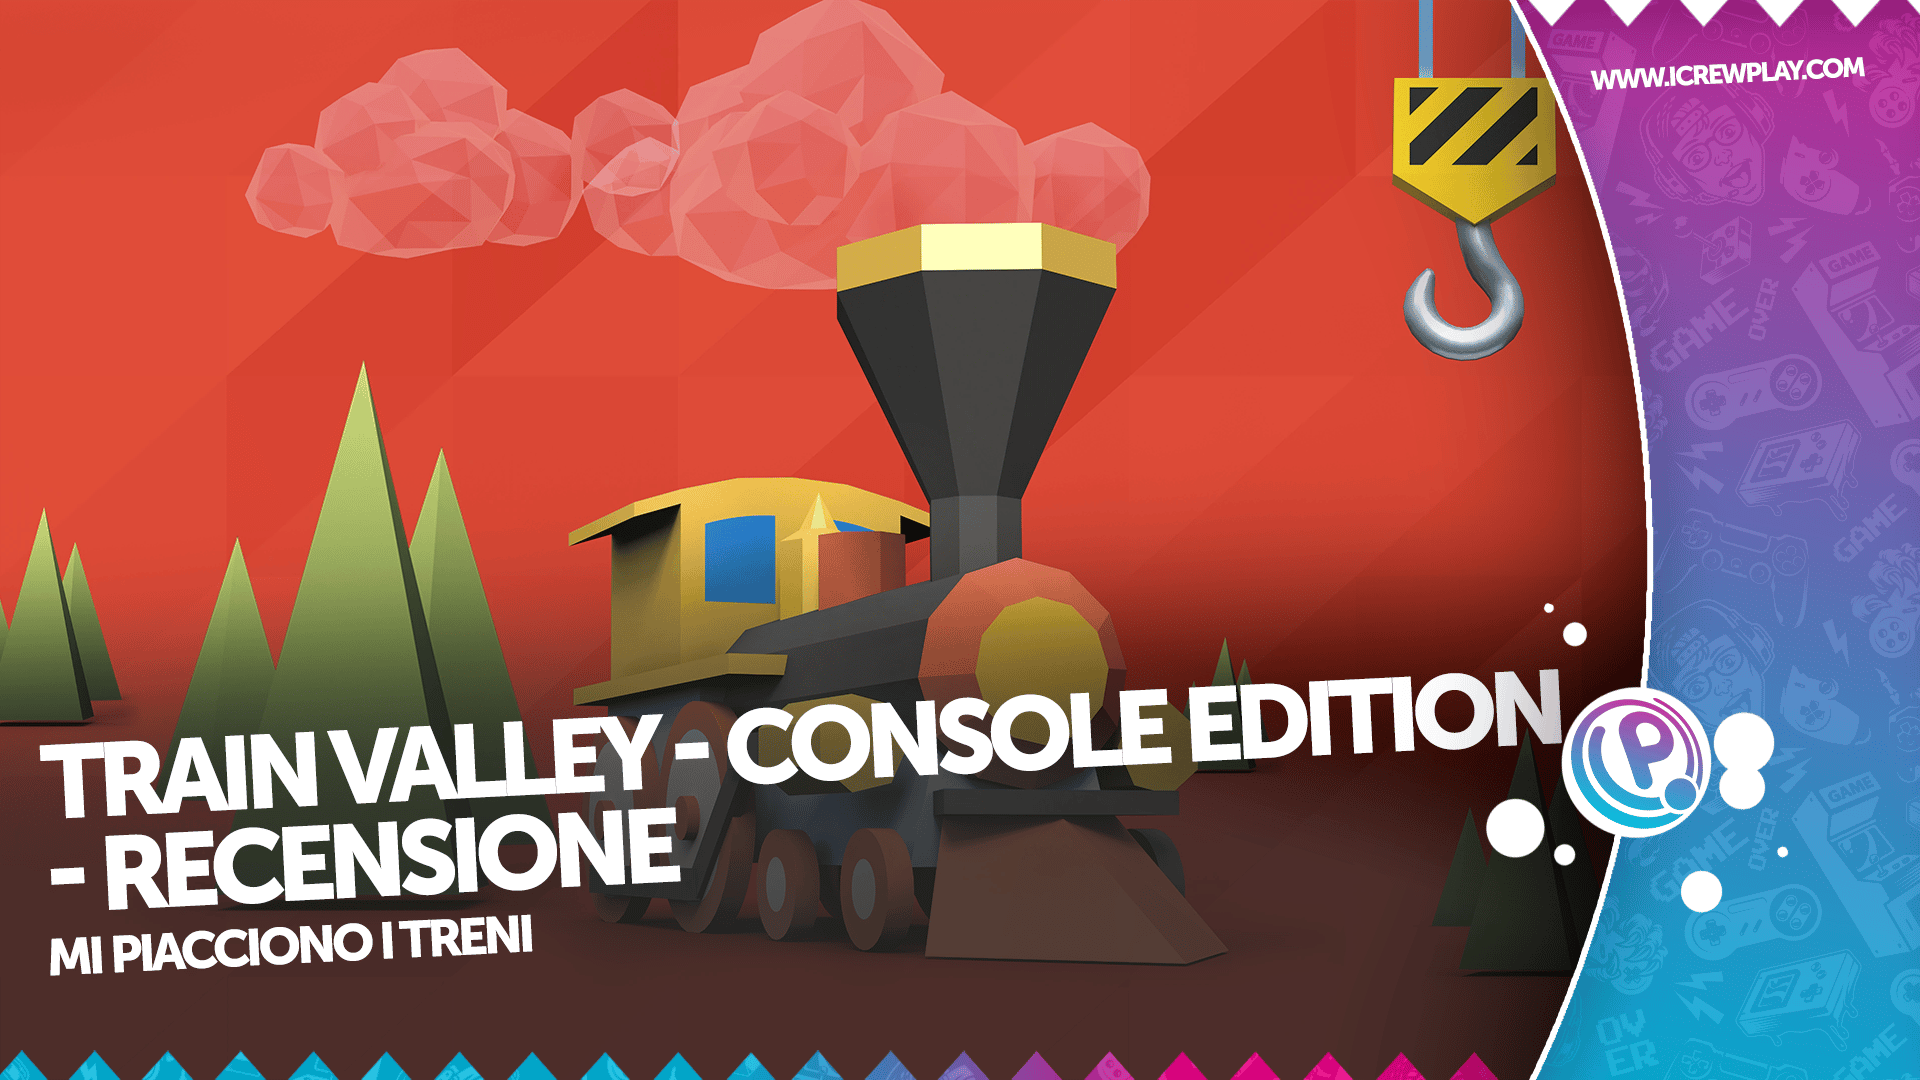 Train Valley: Console Edition - Recensione per Nintendo Switch 2